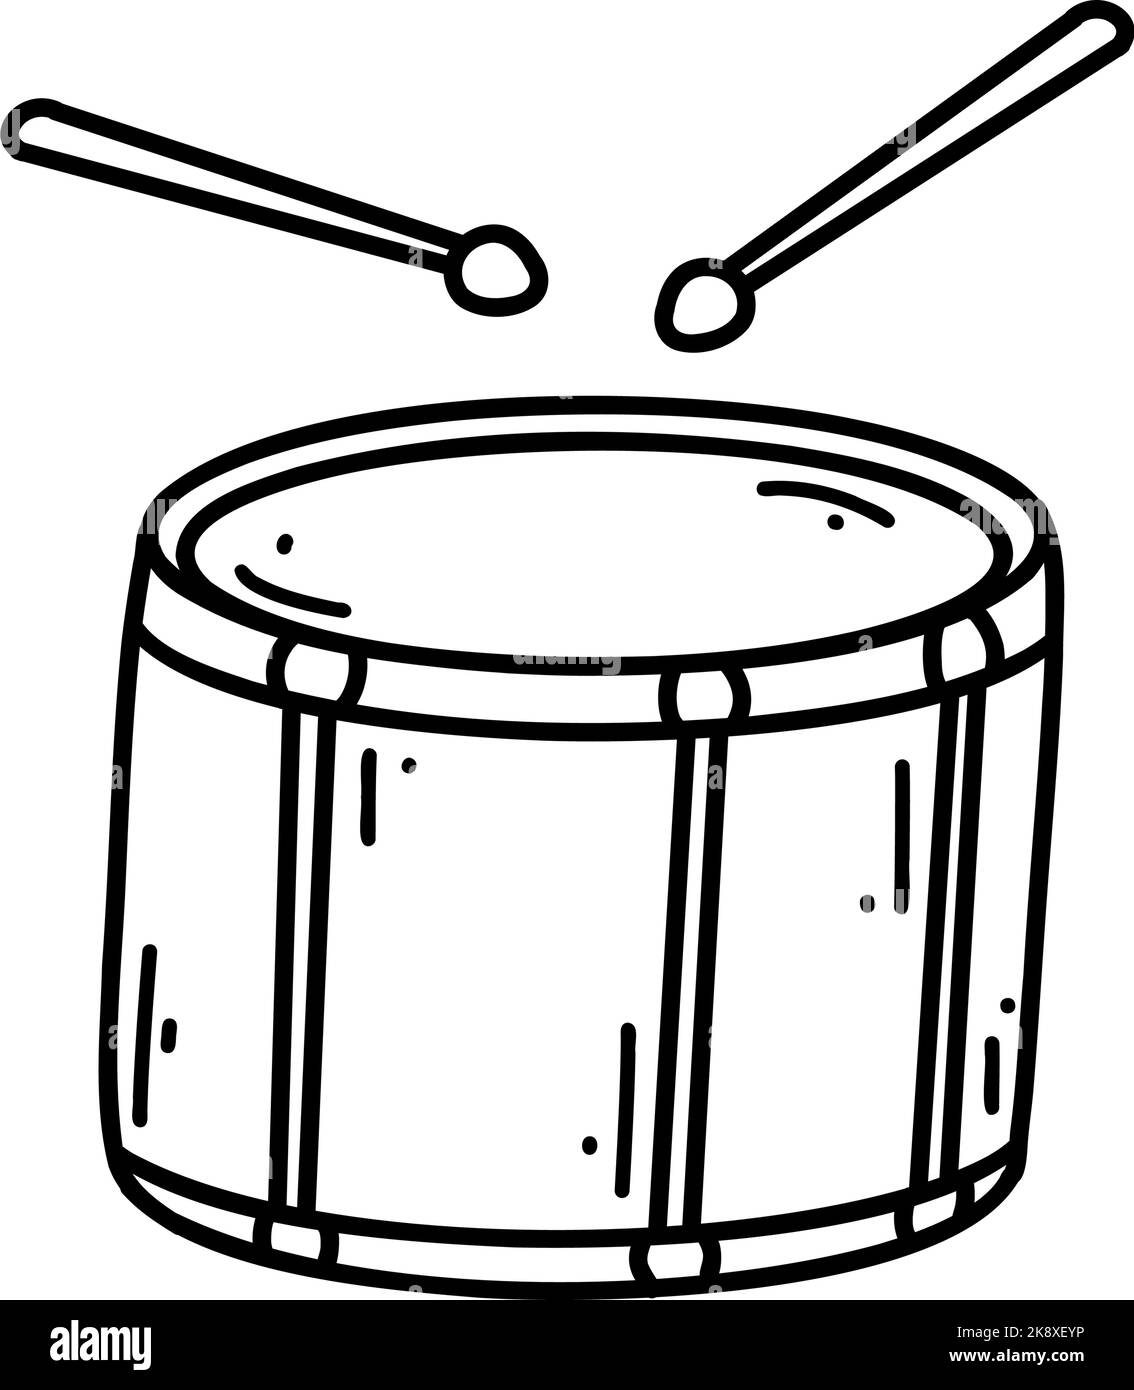 Doodle tambour avec pilons. Dessin vectoriel illustration d'instrument de musique, dessin de fond noir pour web design, icône, impression, page de coloriage. Illustration de Vecteur